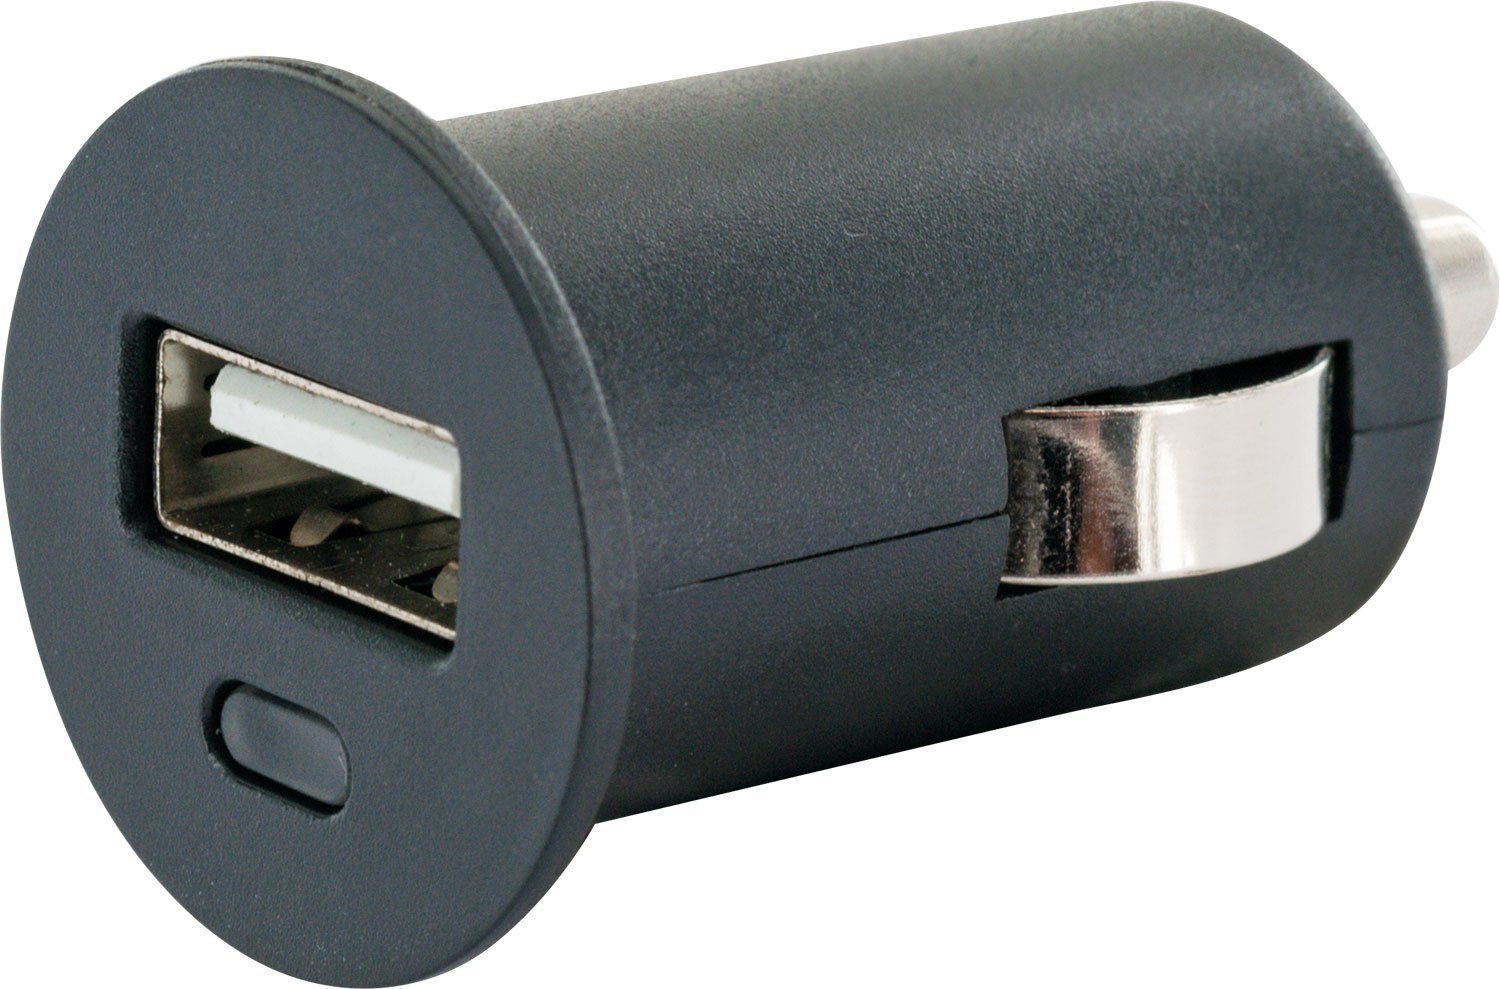 Schwaiger LAD12 531 KFZ-Adapter Zigarettenanzünder zu USB 2.0 A Buchse, integriertes Multi-Schutz Sicherheitssystem